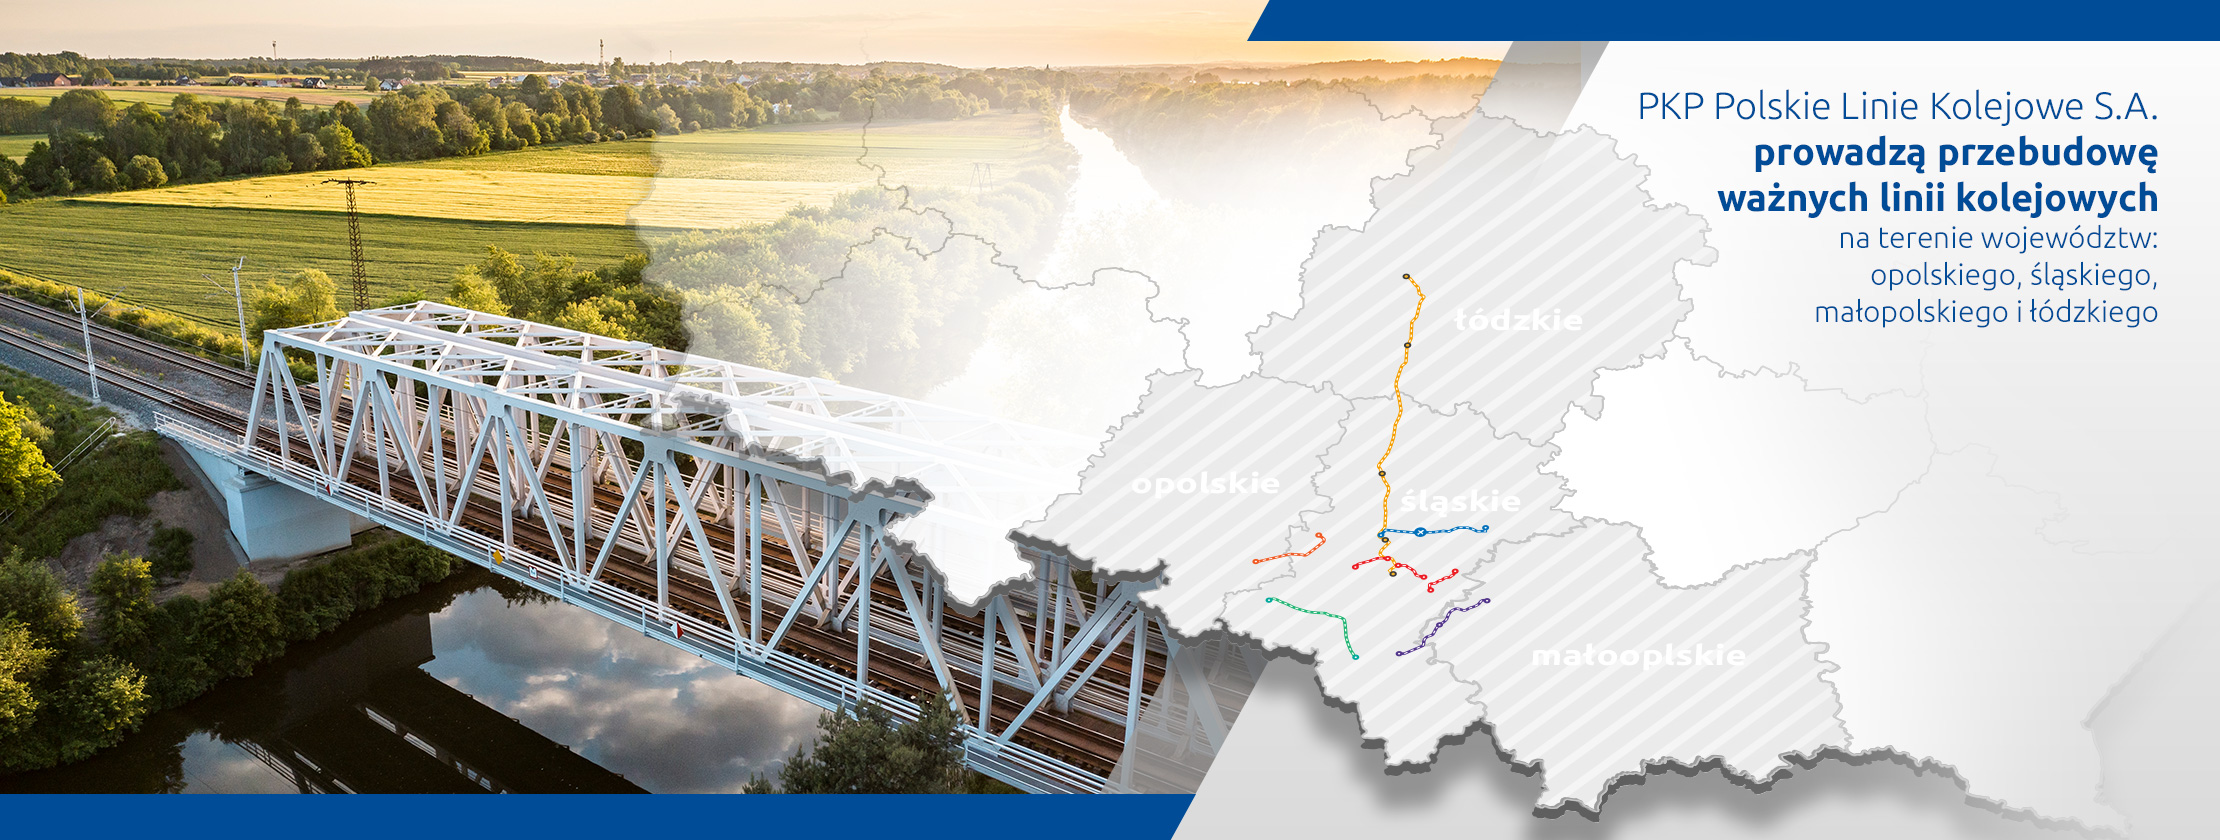 Slider główny Towary na tory - Grafika przedstawiająca odnowiony most kolejowy i mapę województw opolskiego, śląskiego, małopolskiego i łódzkiego z liniami kolejowymi modernizowanymi w ramach projektów PKP Polskich Linii Kolejowych S.A. - prowadzi do zakładki inwestycje.